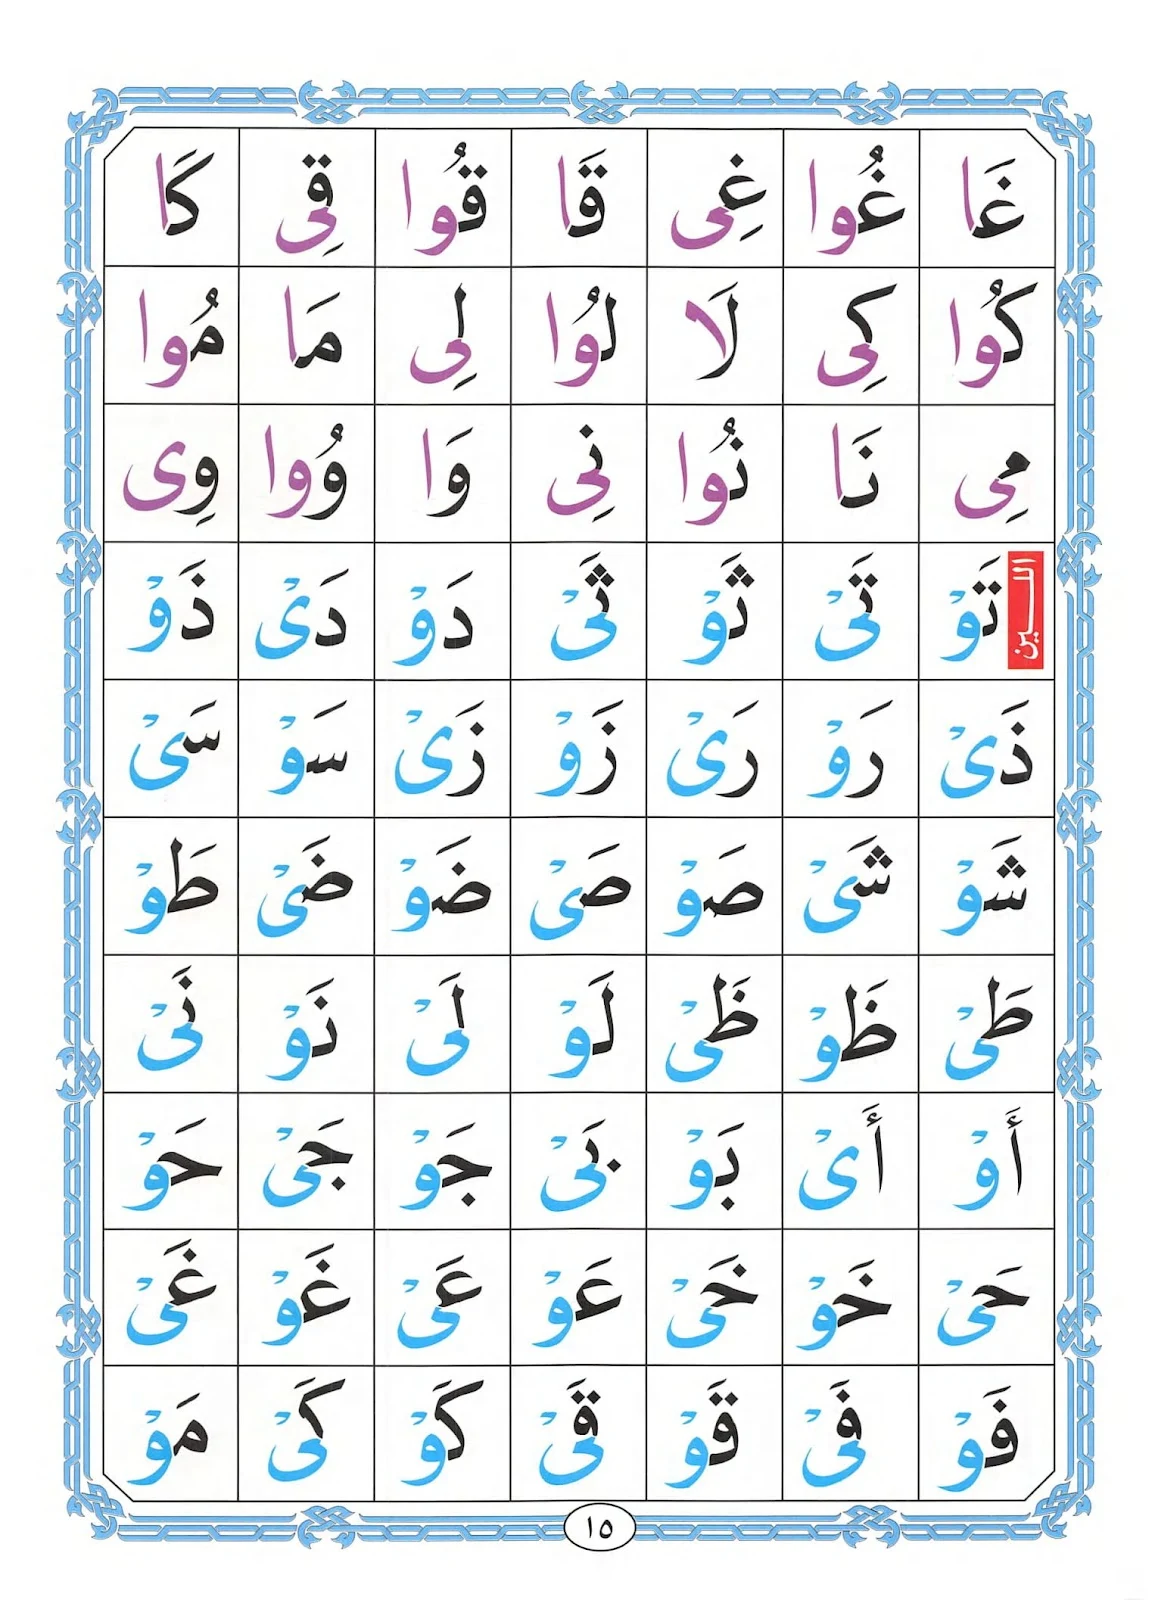 تحميل كتاب القاعدة النورانية لتعليم الاطفال القرآن الكريم pdf